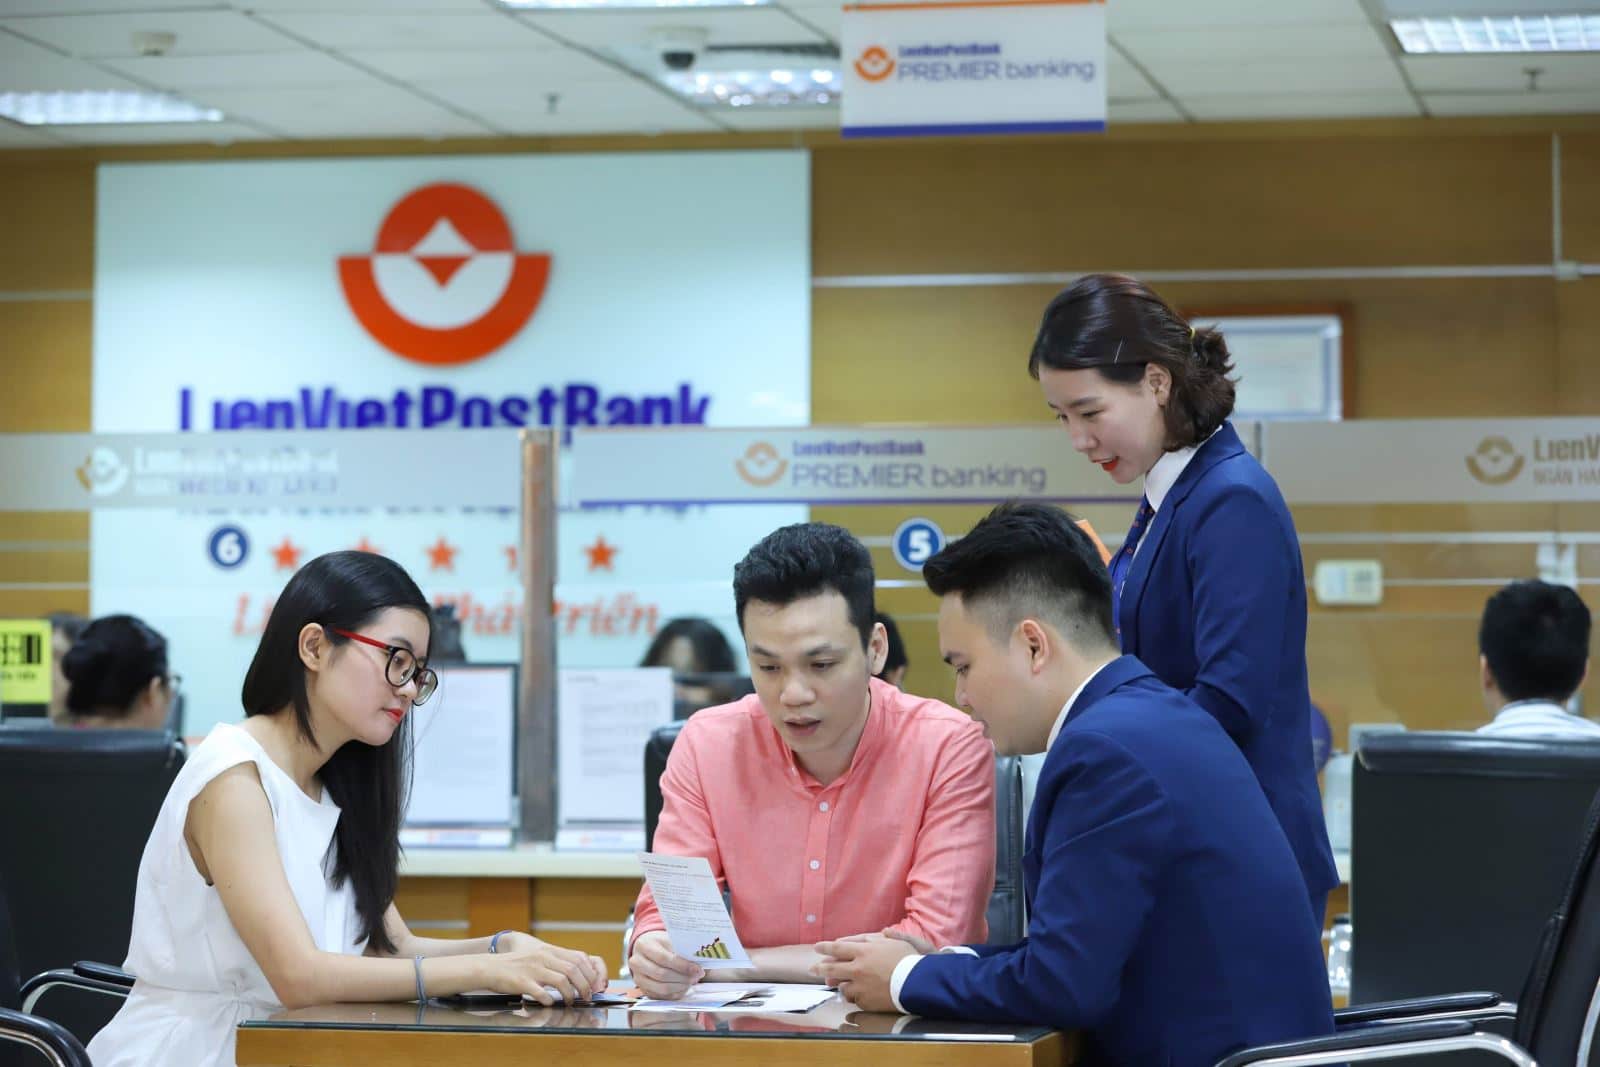 Thủ tục vay tại ngân hàng Liên Việt rất đơn giản nhanh gọn lẹ